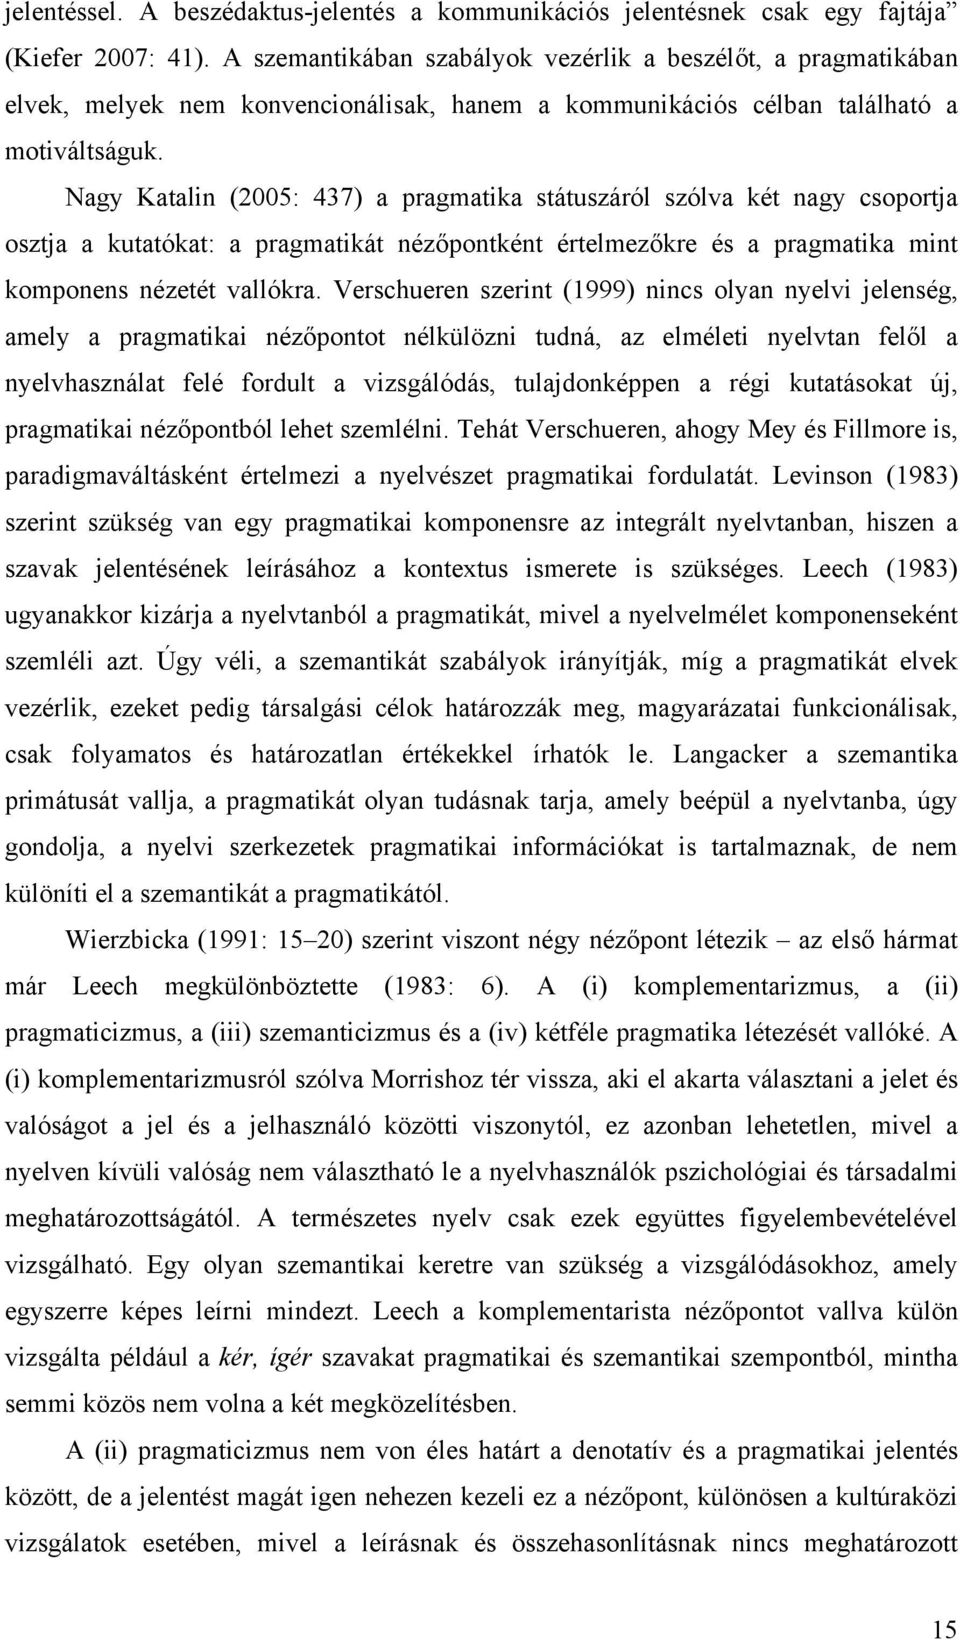 Nagy Katalin (2005: 437) a pragmatika státuszáról szólva két nagy csoportja osztja a kutatókat: a pragmatikát nézőpontként értelmezőkre és a pragmatika mint komponens nézetét vallókra.